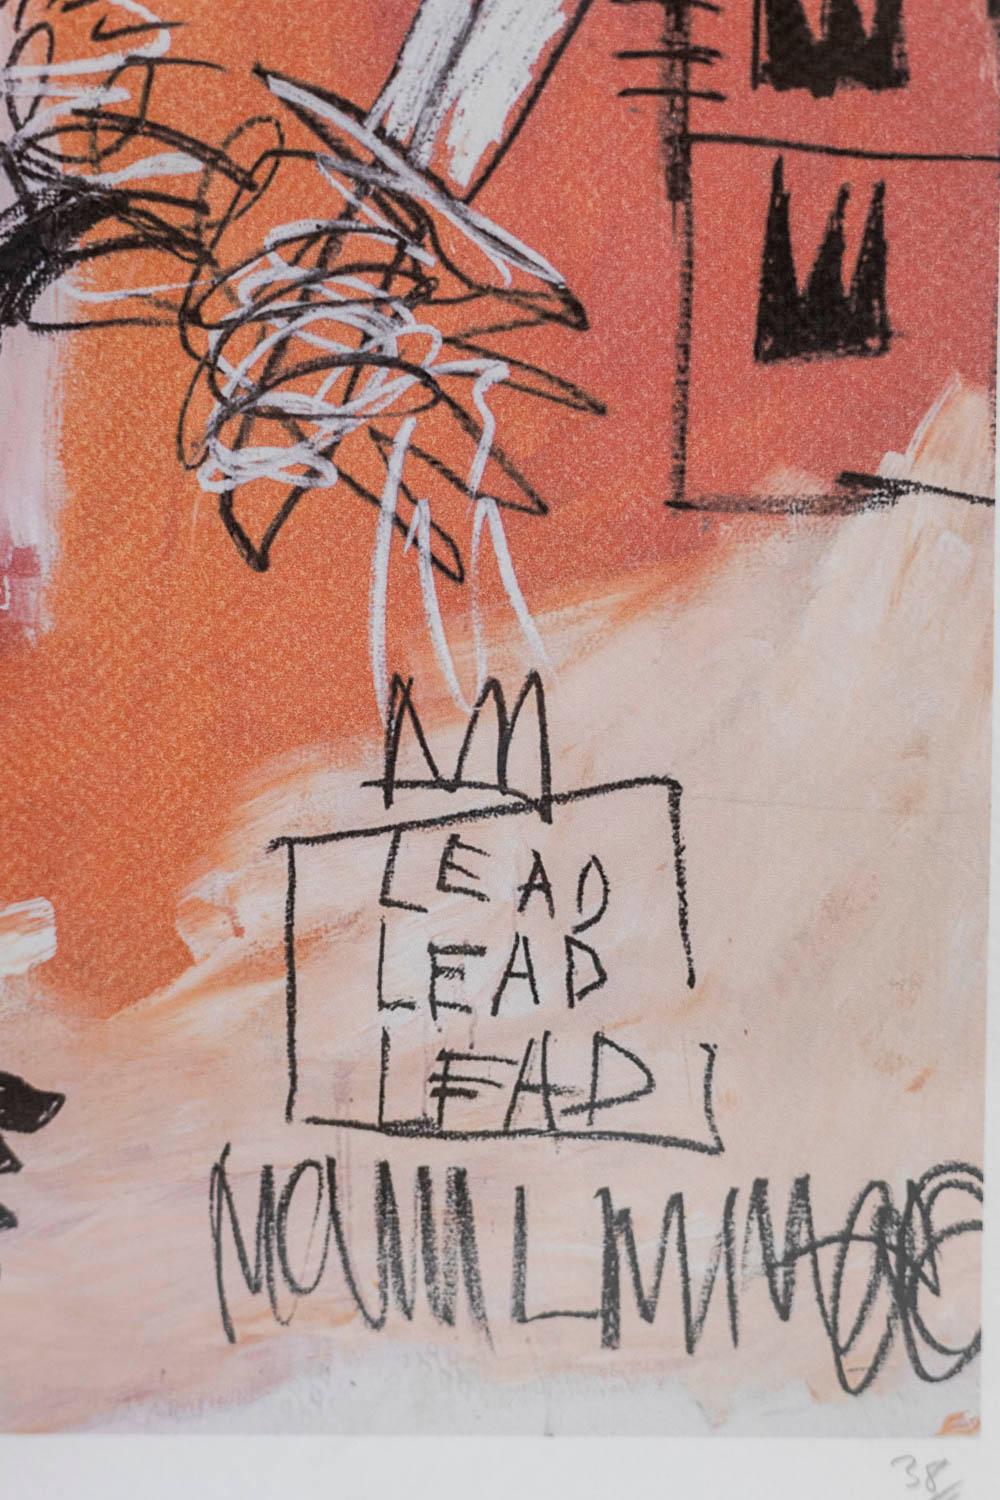 Jean-Michel Basquiat, signé et numéroté.

Sérigraphie abstraite dans les tons orange et rose, dans son cadre en chêne blond.

Œuvre américaine réalisée dans les années 1990.

Numéroté 38/100.

Dimensions : H 50 x L 70 x P 2 cm : H 50 x L 70 x P 2